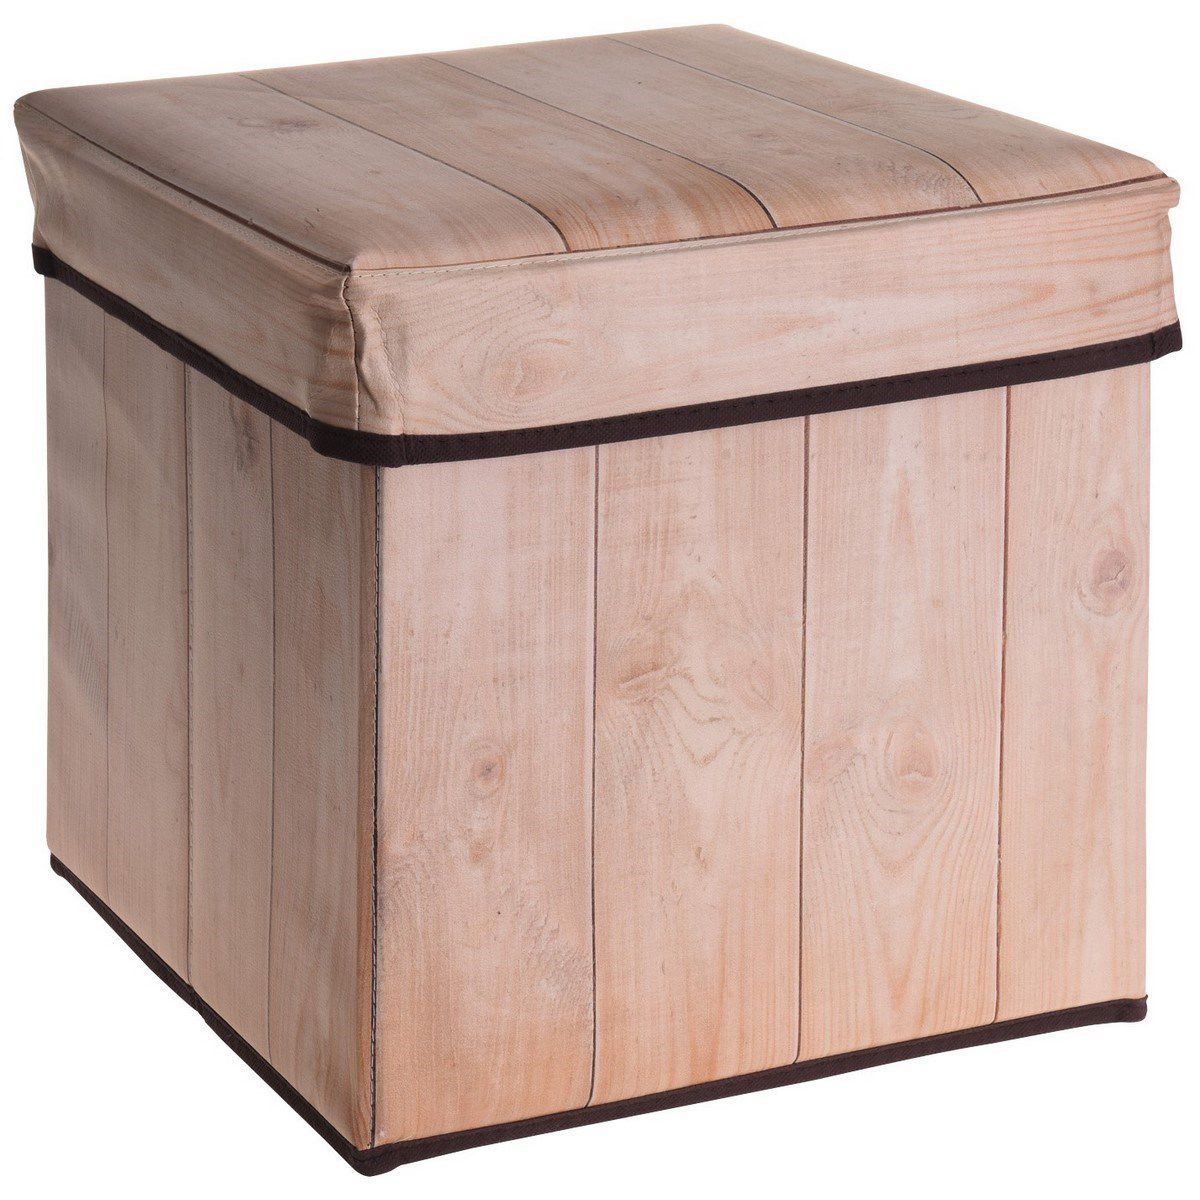 Úložný sedací box Wooden Birch, 30 x 30 x 30 cm  - 4home.cz